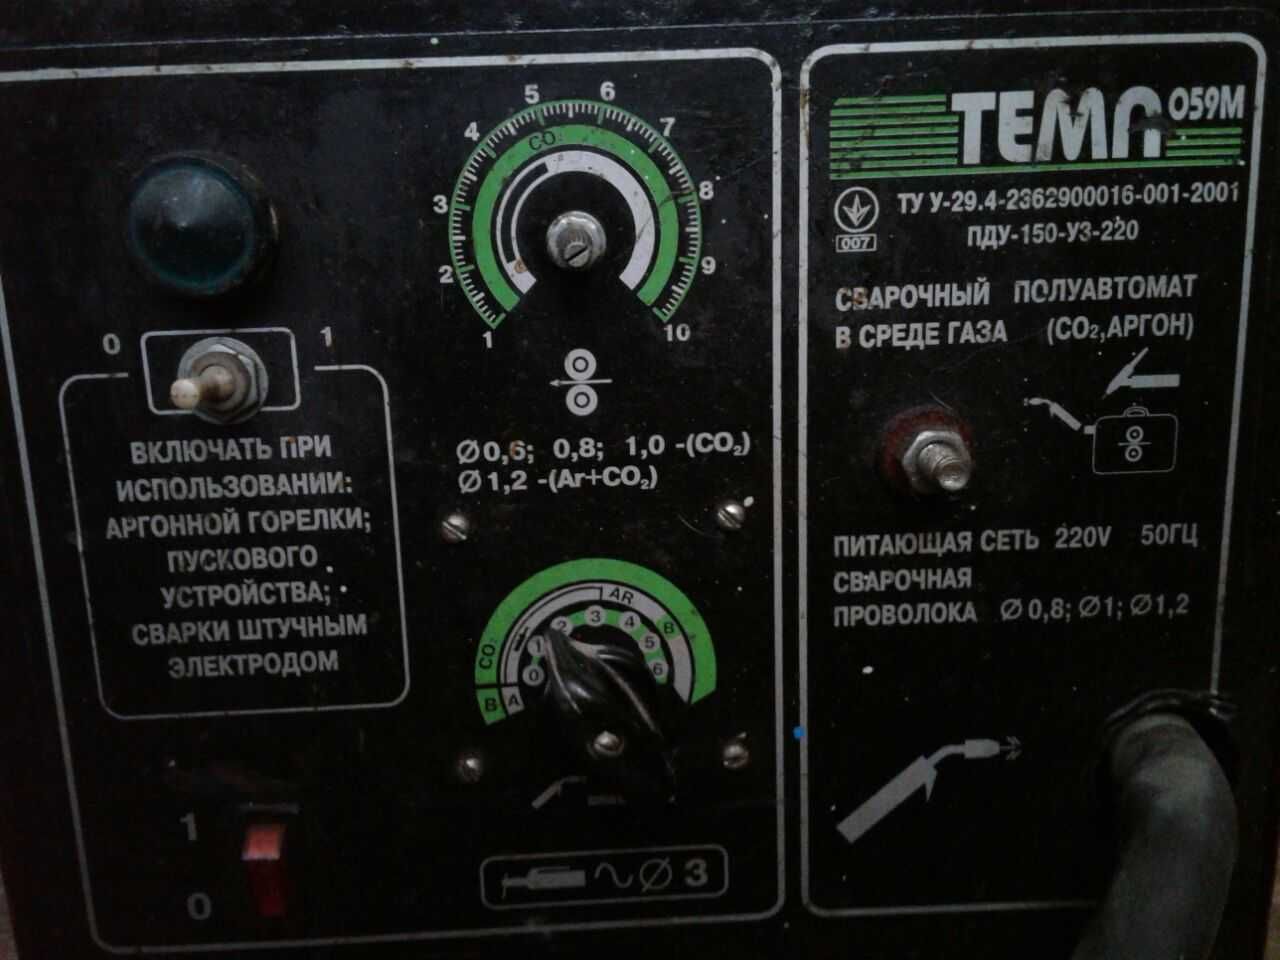 Сварочный полуавтомат ТЕМП 059М